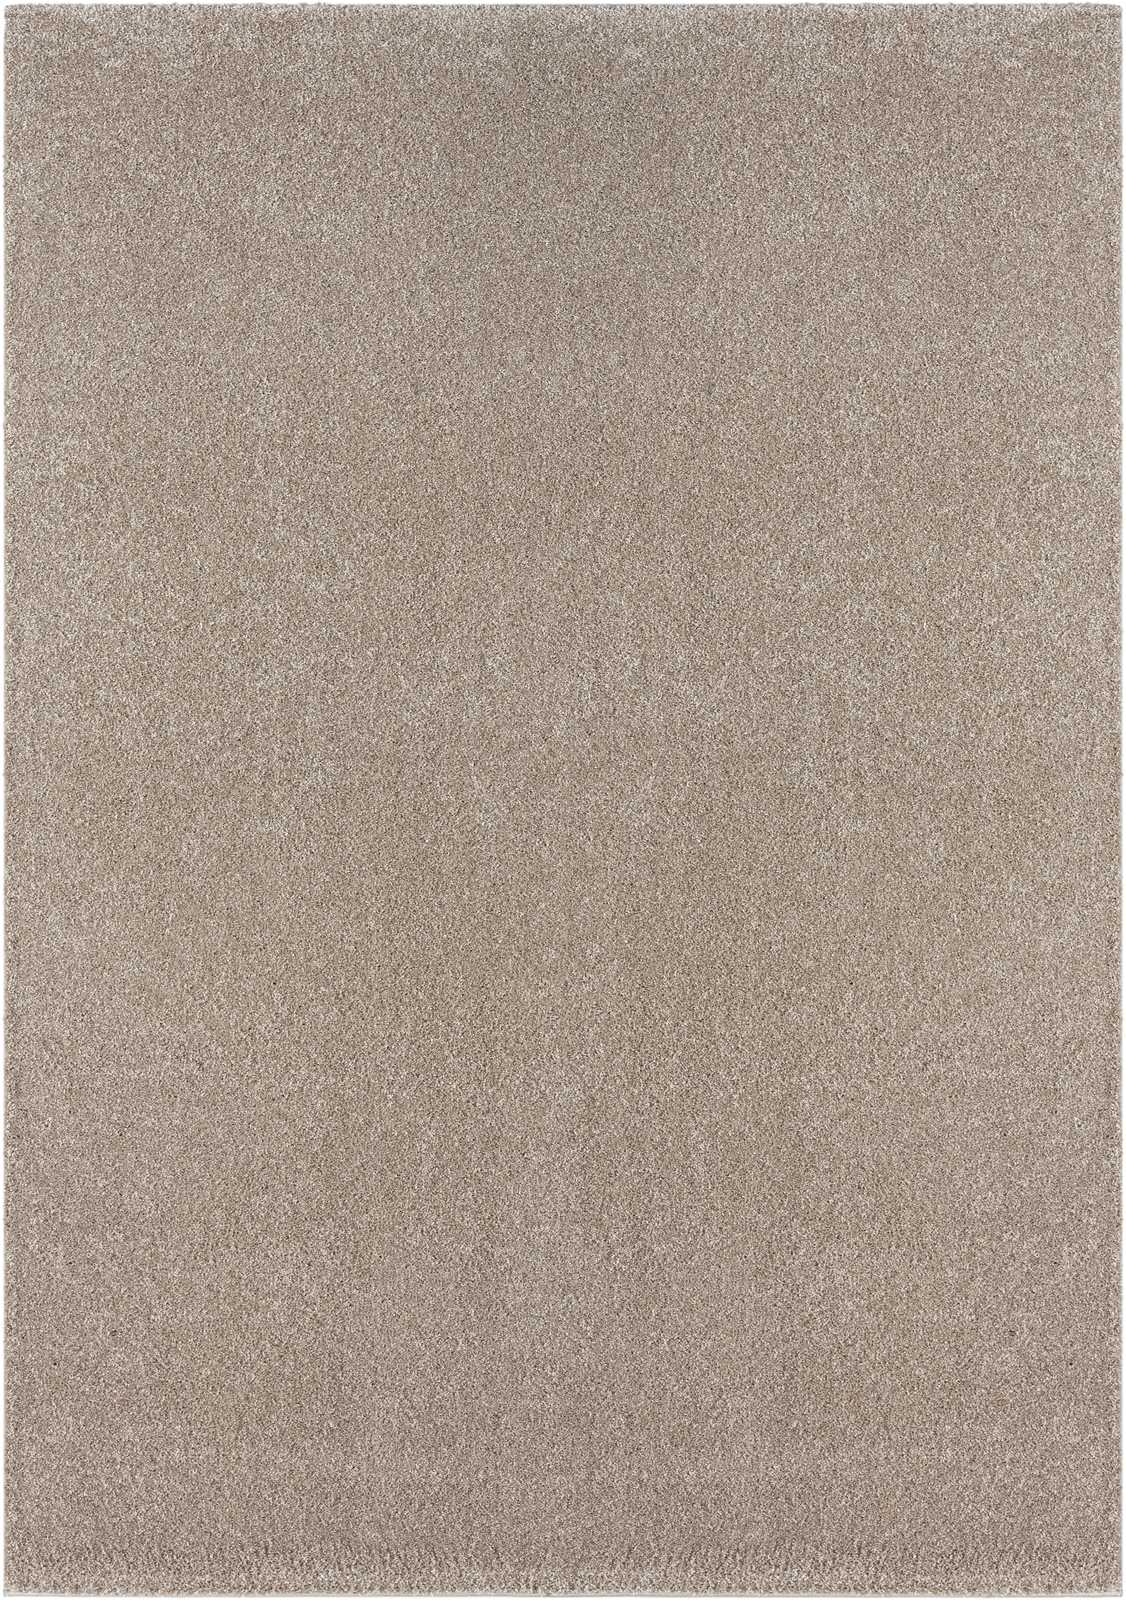             Tapis à poils courts doux beige - 110 x 60 cm
        